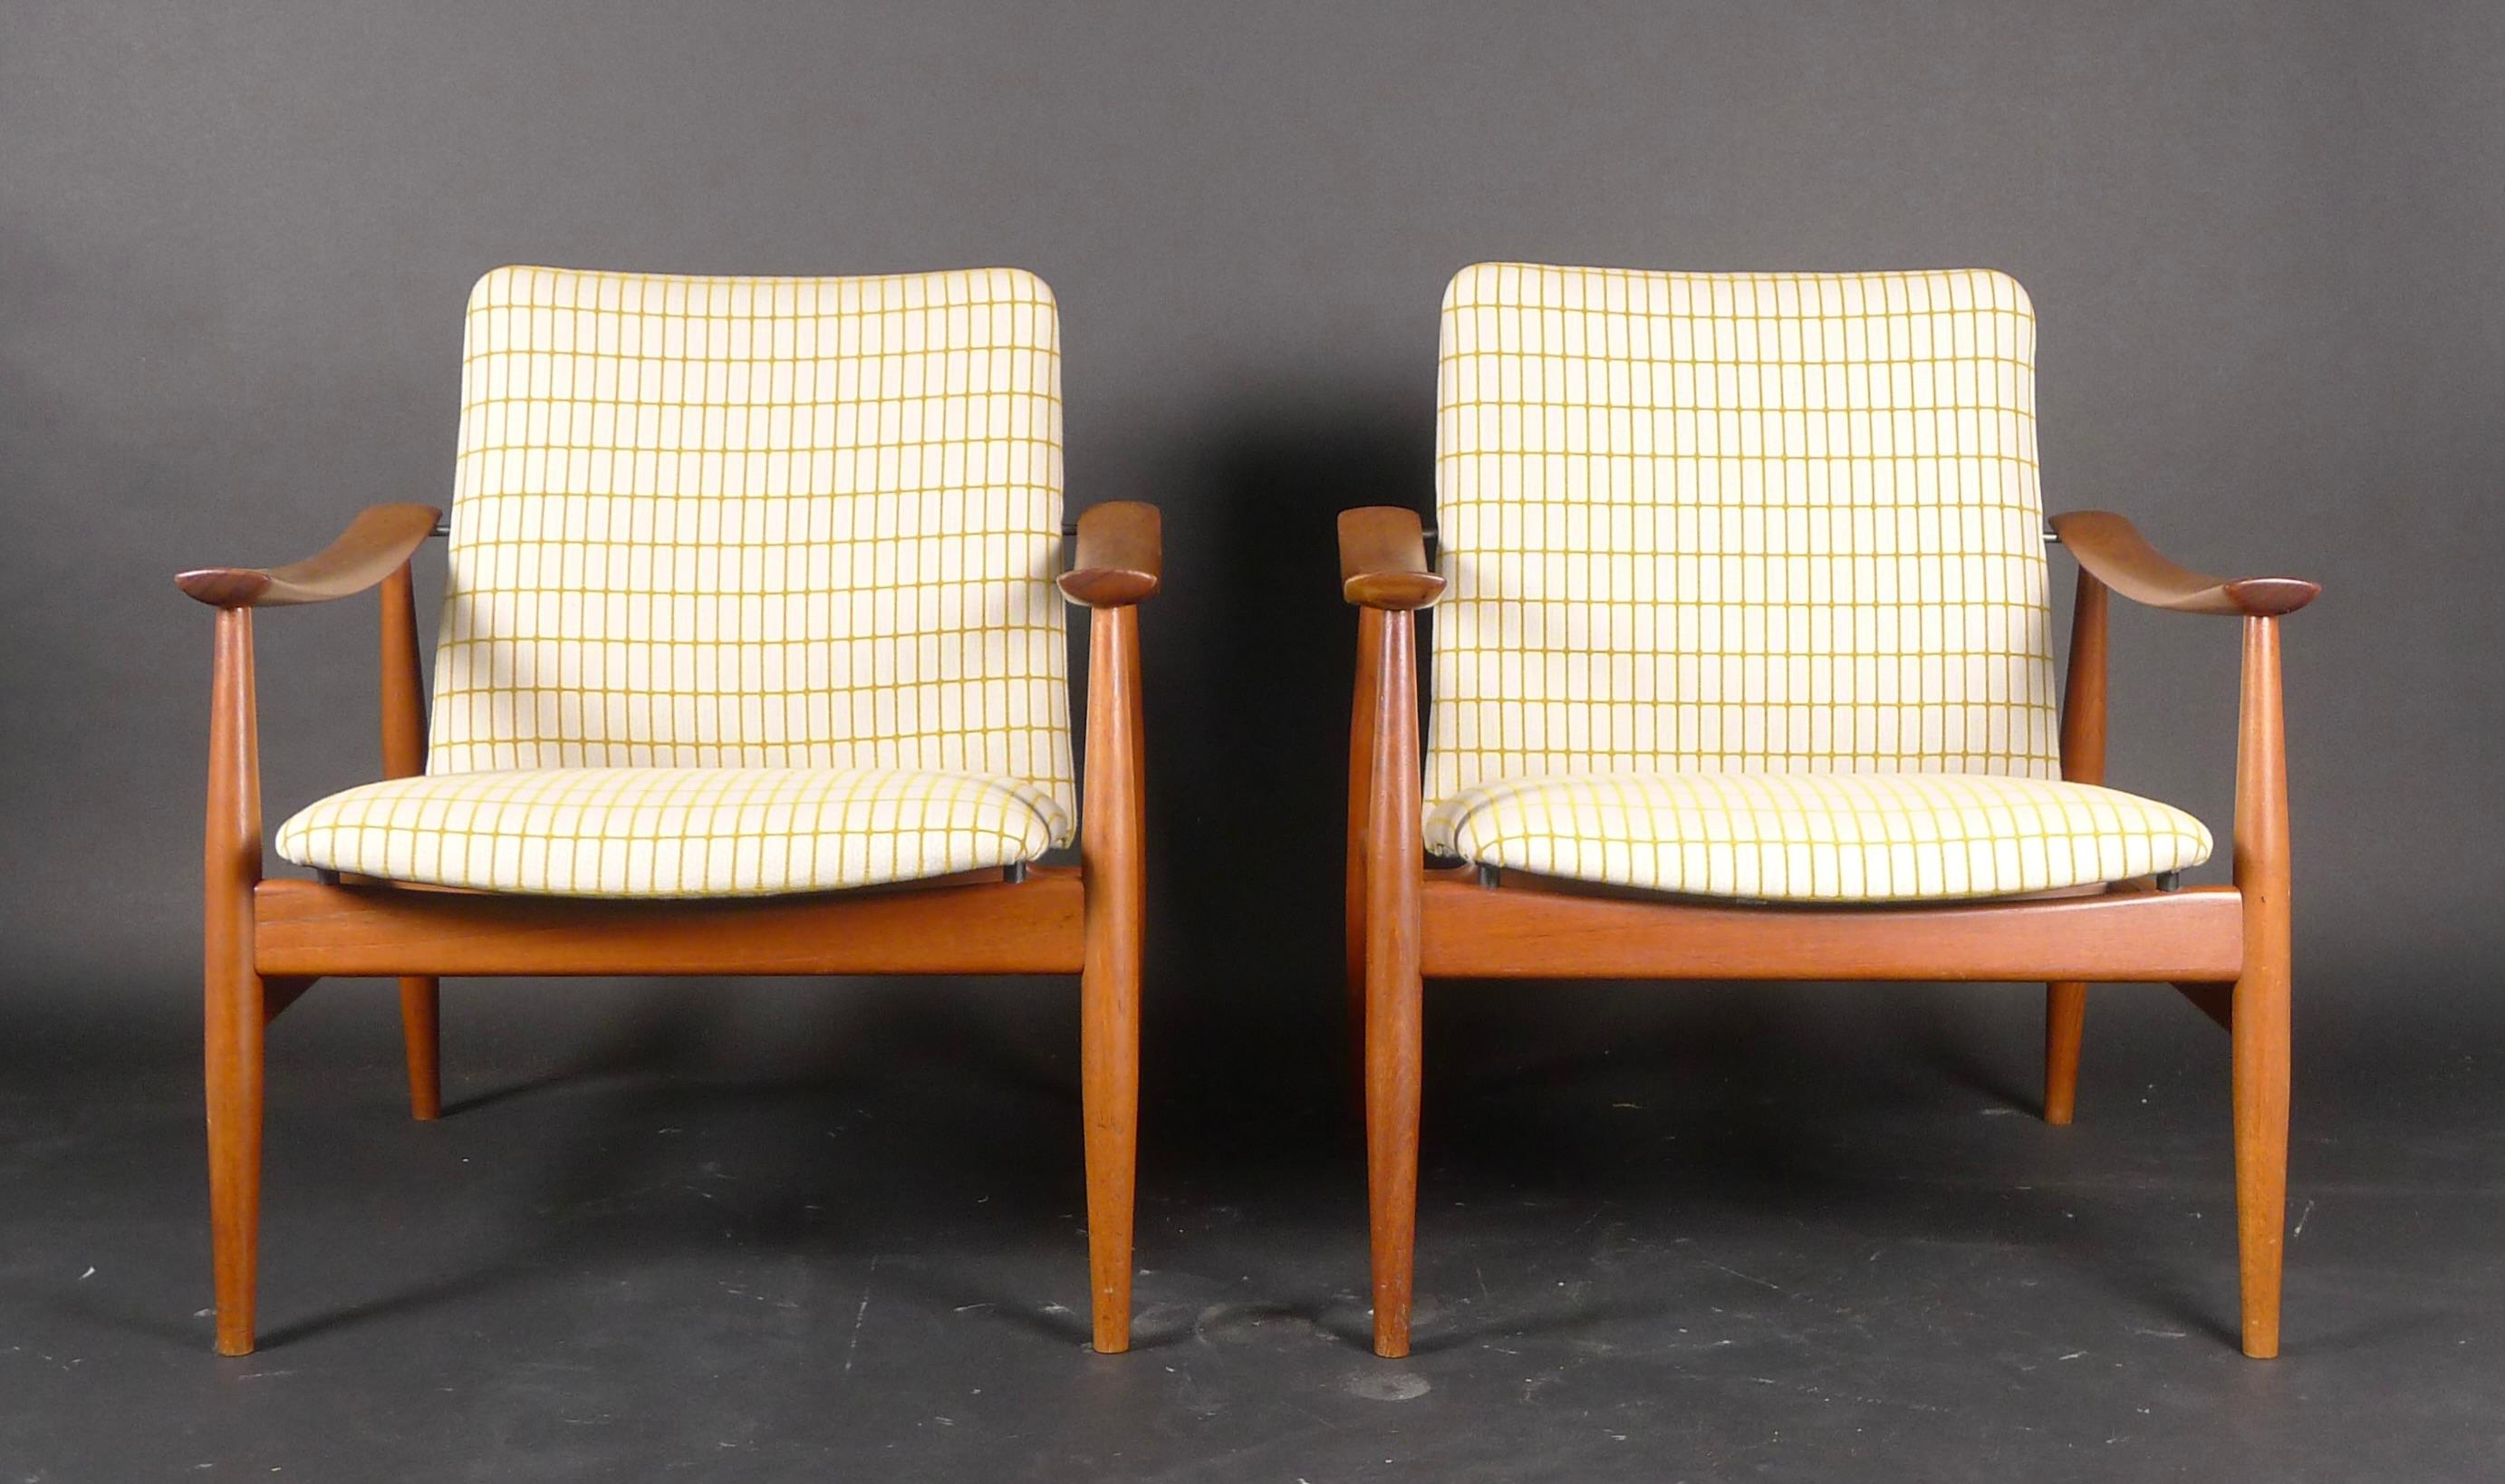 Scandinavian Modern Finn Juhl, Pair of Teak Easy Chairs, Model Fd138, France & Son, 1959 For Sale